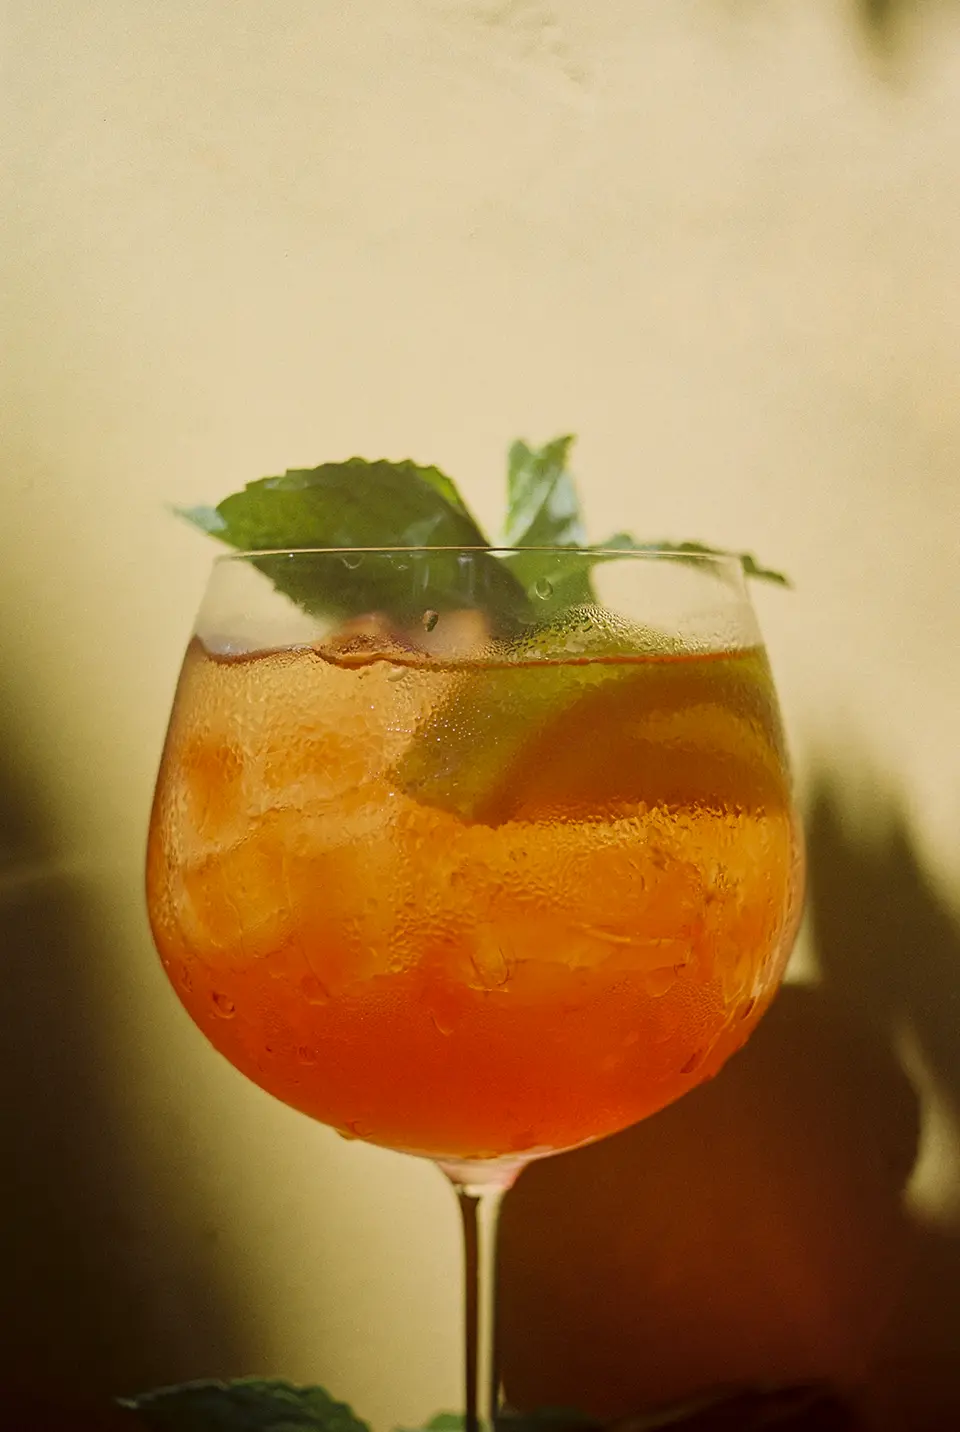 Taça cheia de um drink de cor laranja bem vivo. Dentro da taça há pedras de gelo, um gomo de limão siciliano e um ramo de hortelã.